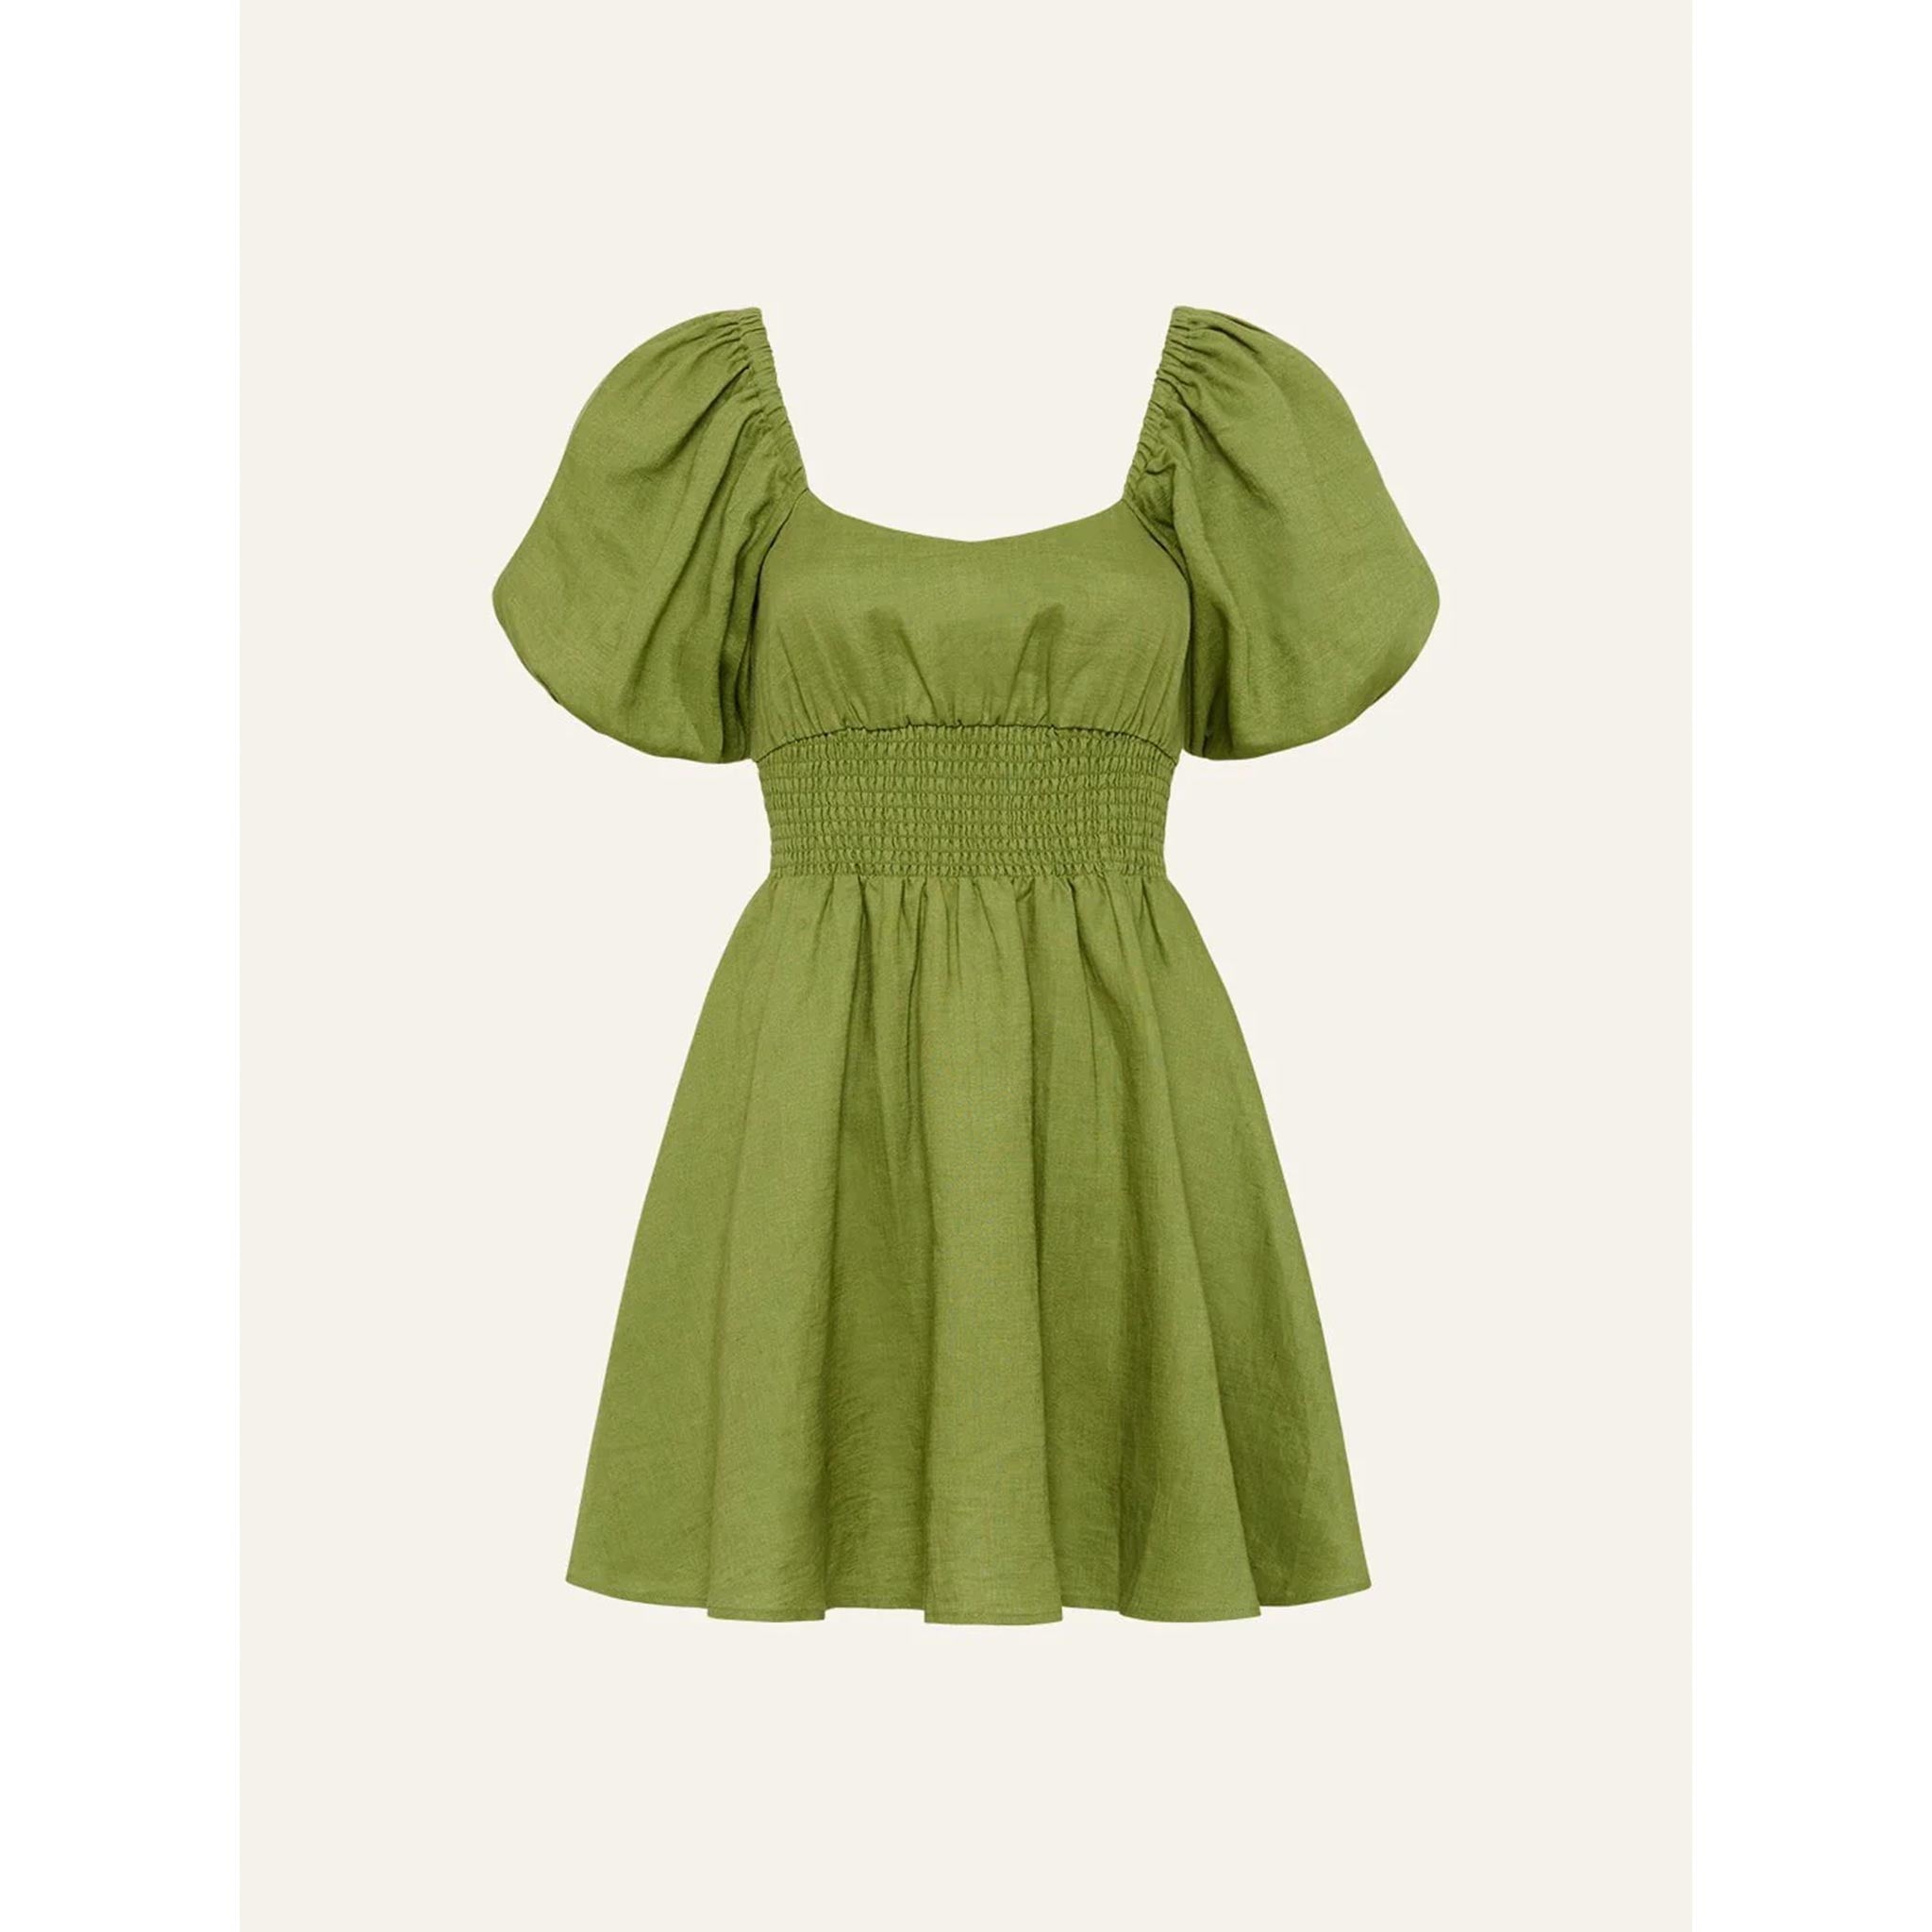 Smocked Mini Dress in Olive